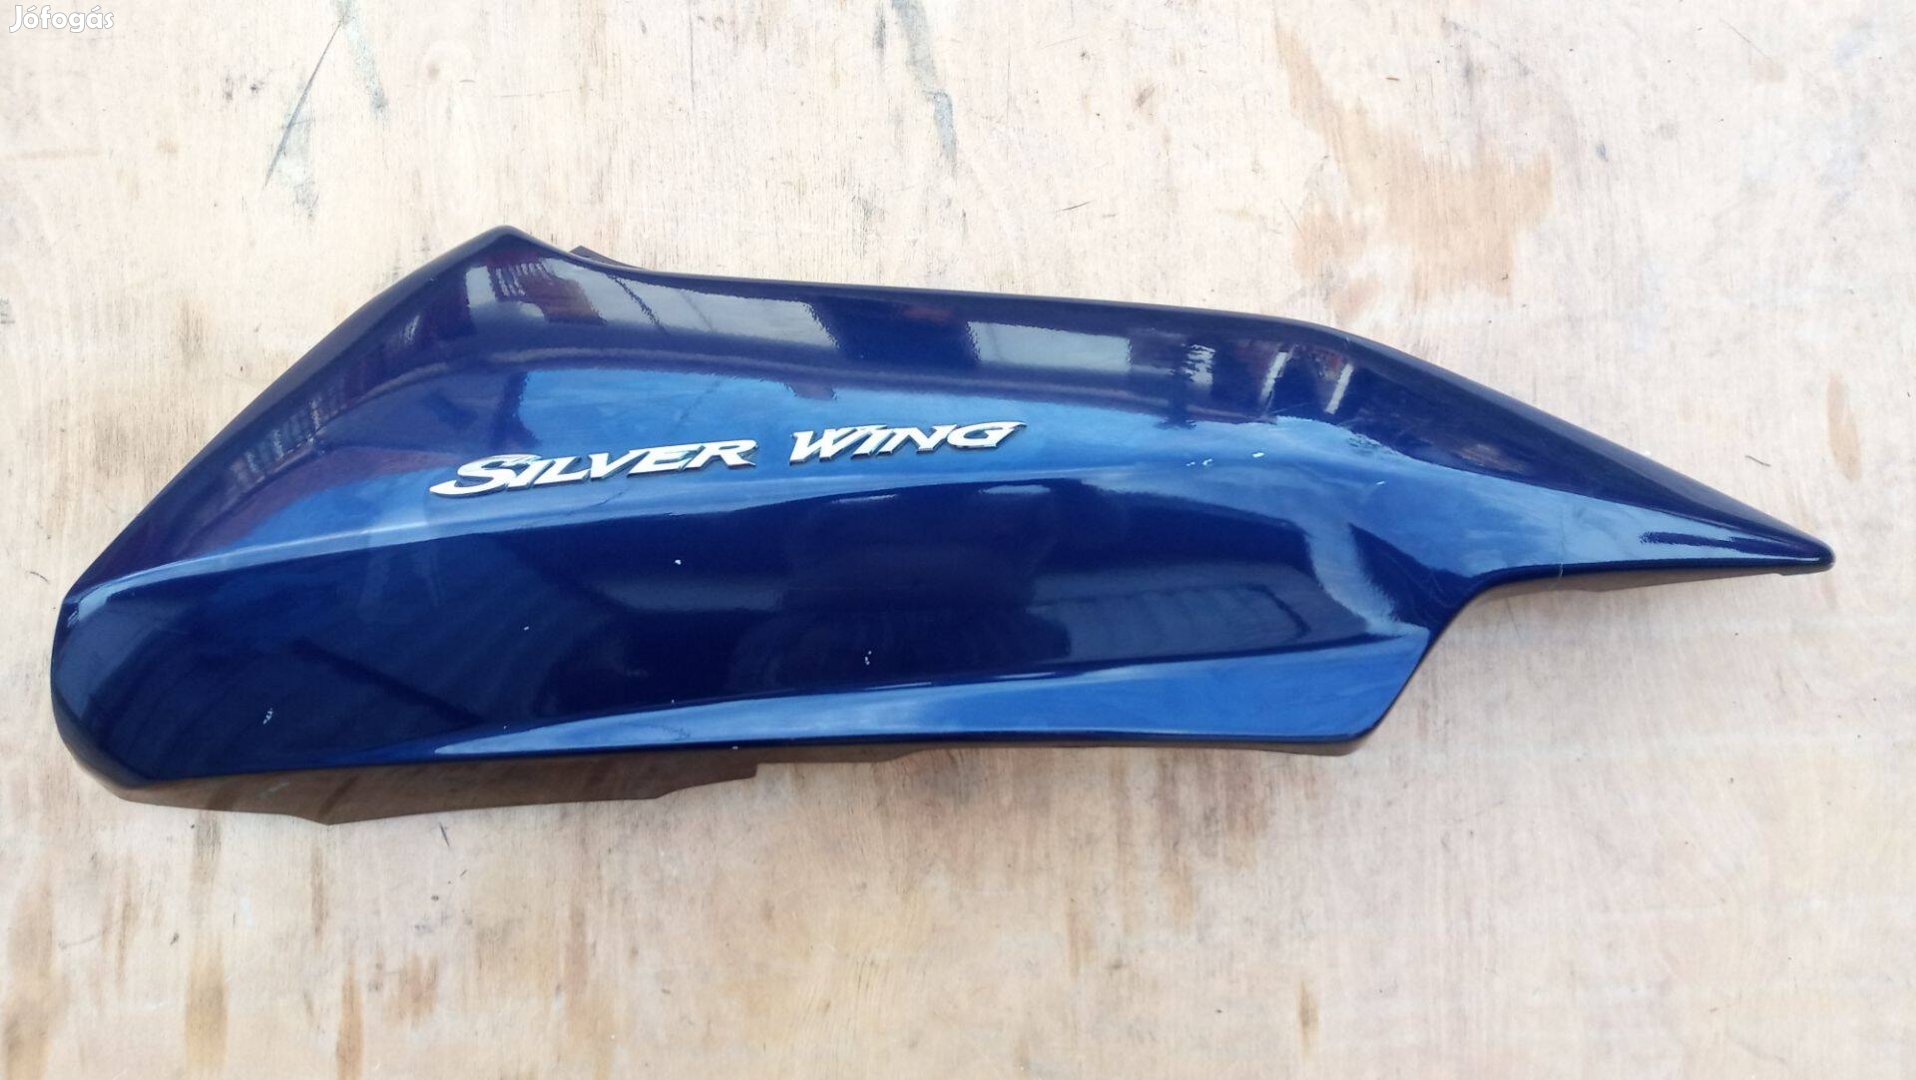 Honda Silver Wing Fjs 400 - 600 oldalidom jobbos sérült kék